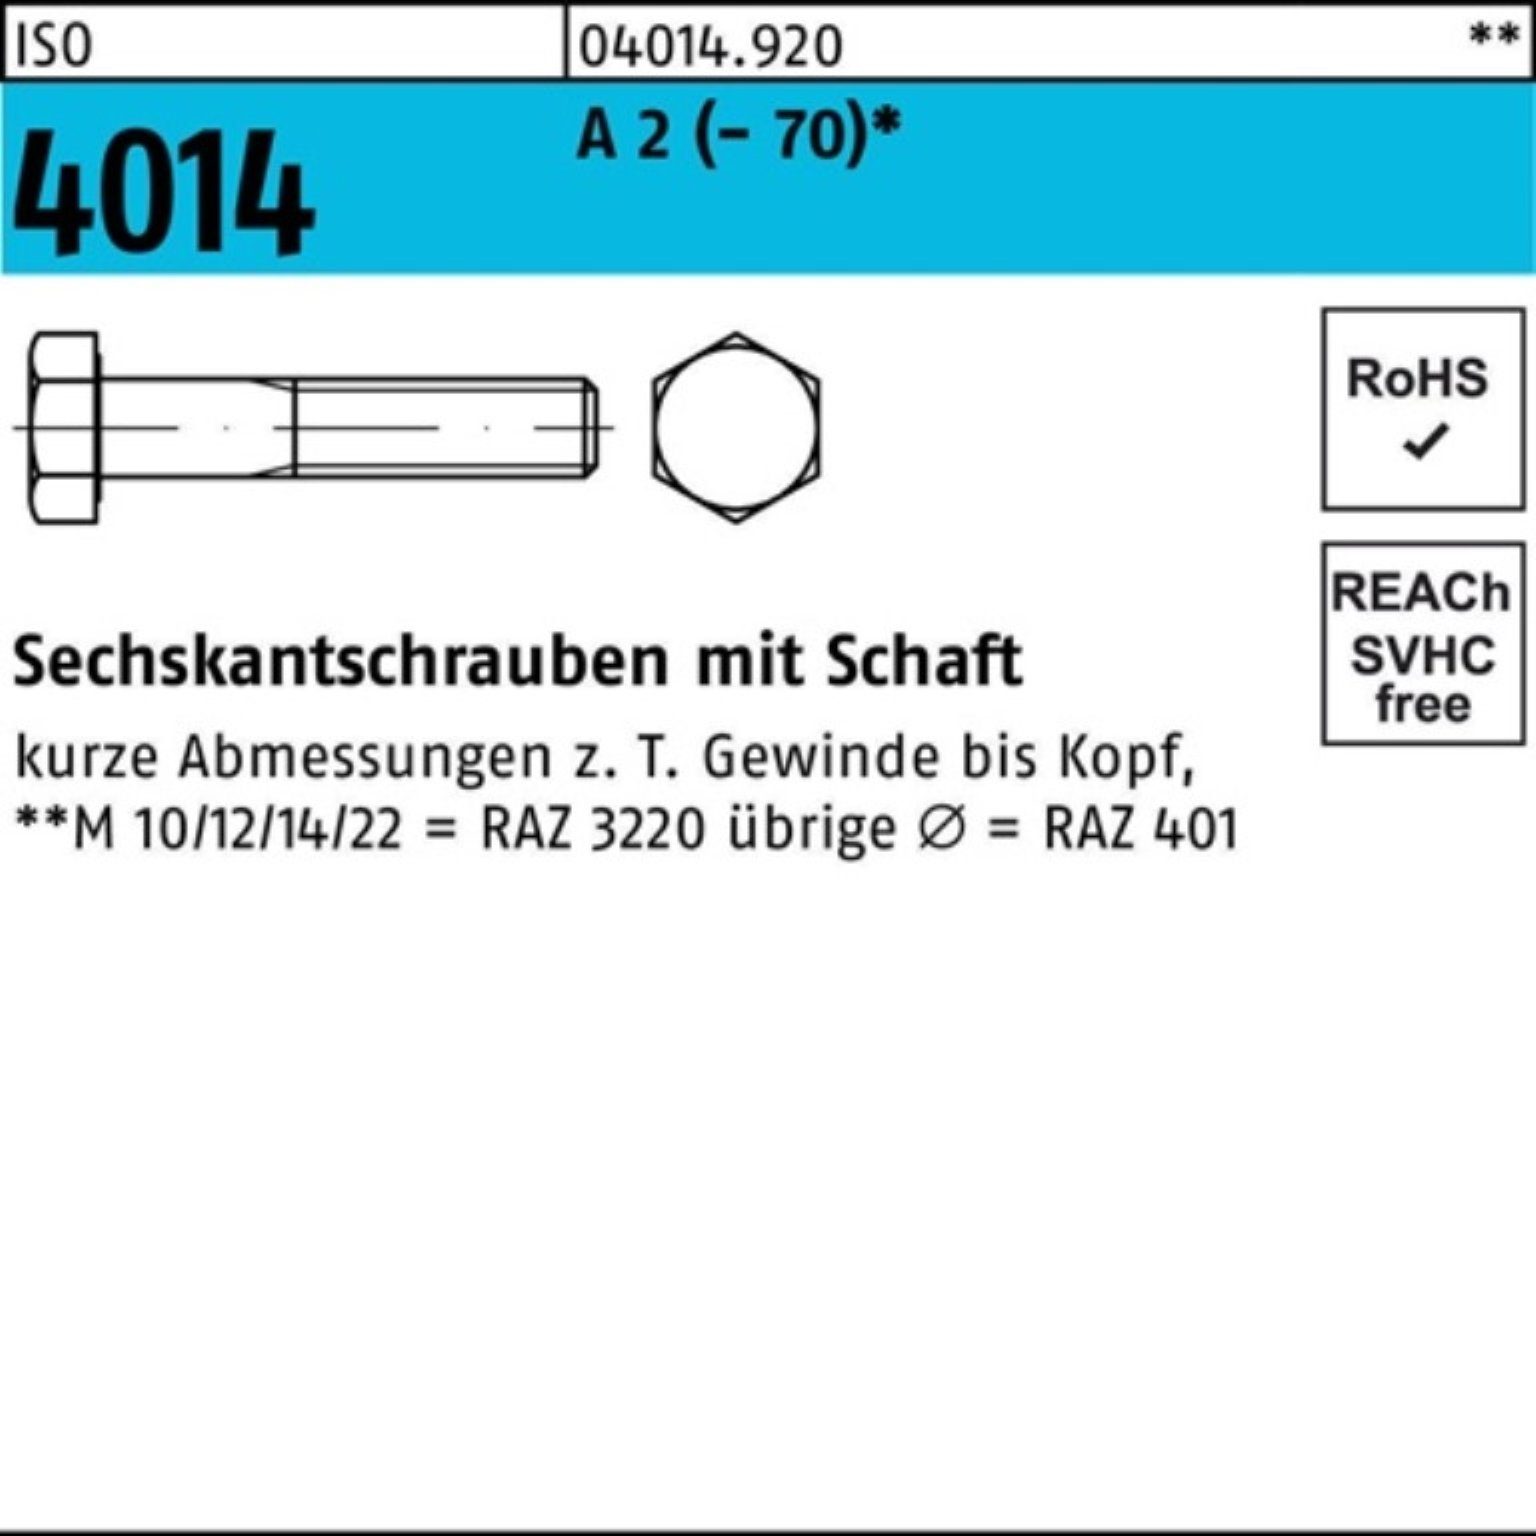 Bufab Sechskantschraube 100er Pack Sechskantschraube ISO 4014 Schaft M24x 200 A 2 (70) 1 St